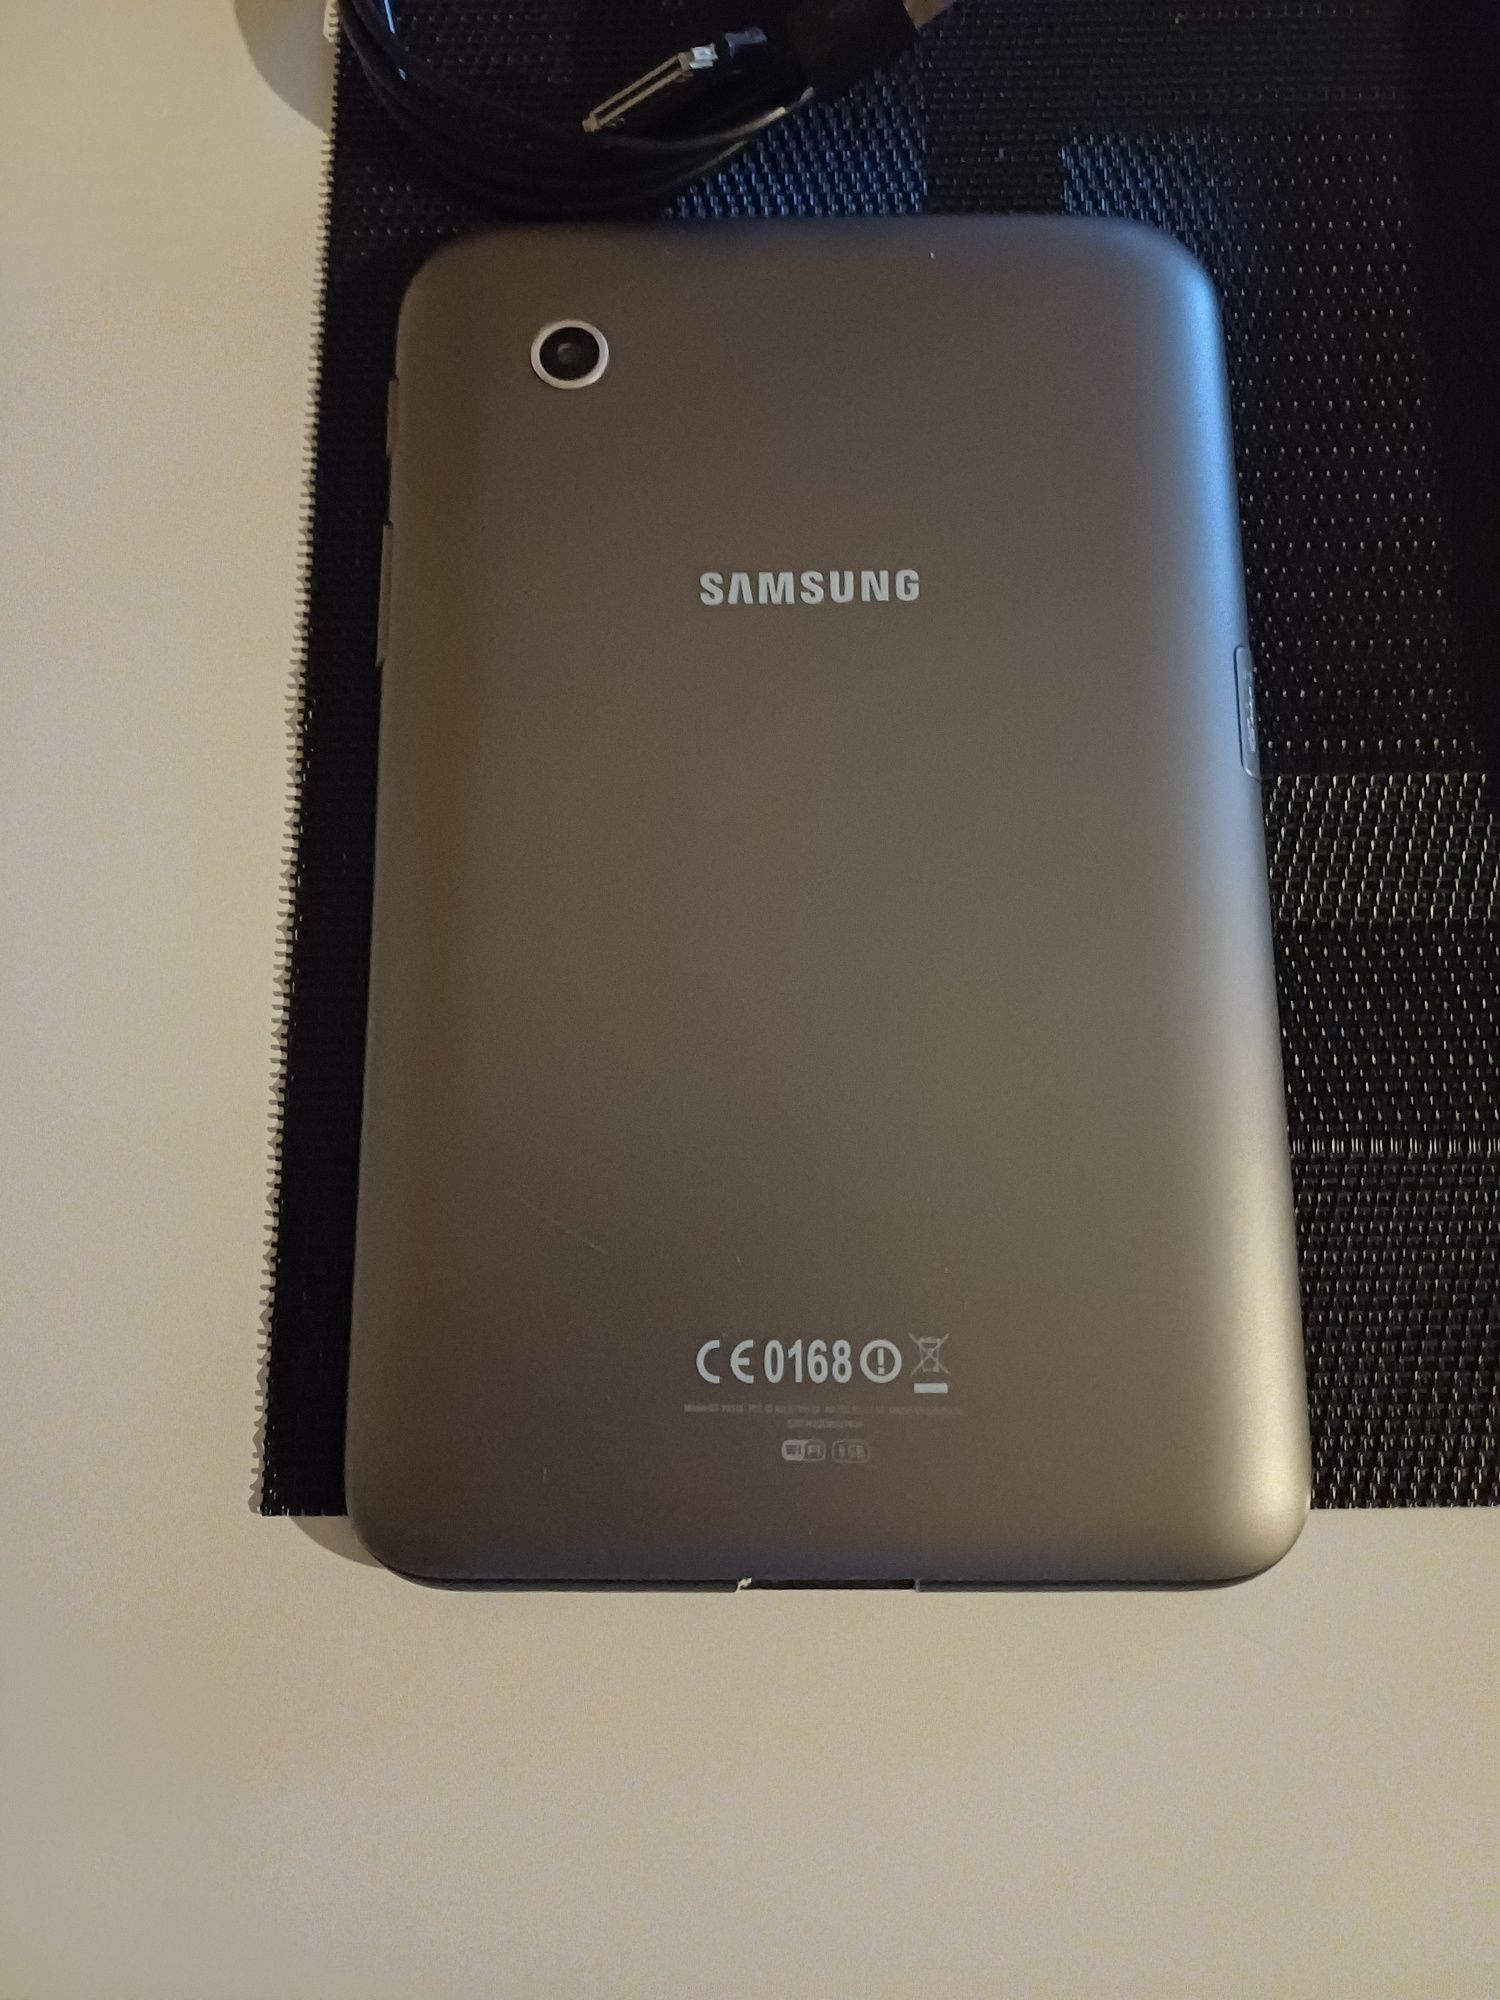 Tablet Samsung Galaxy Tab 2 GT-P3110